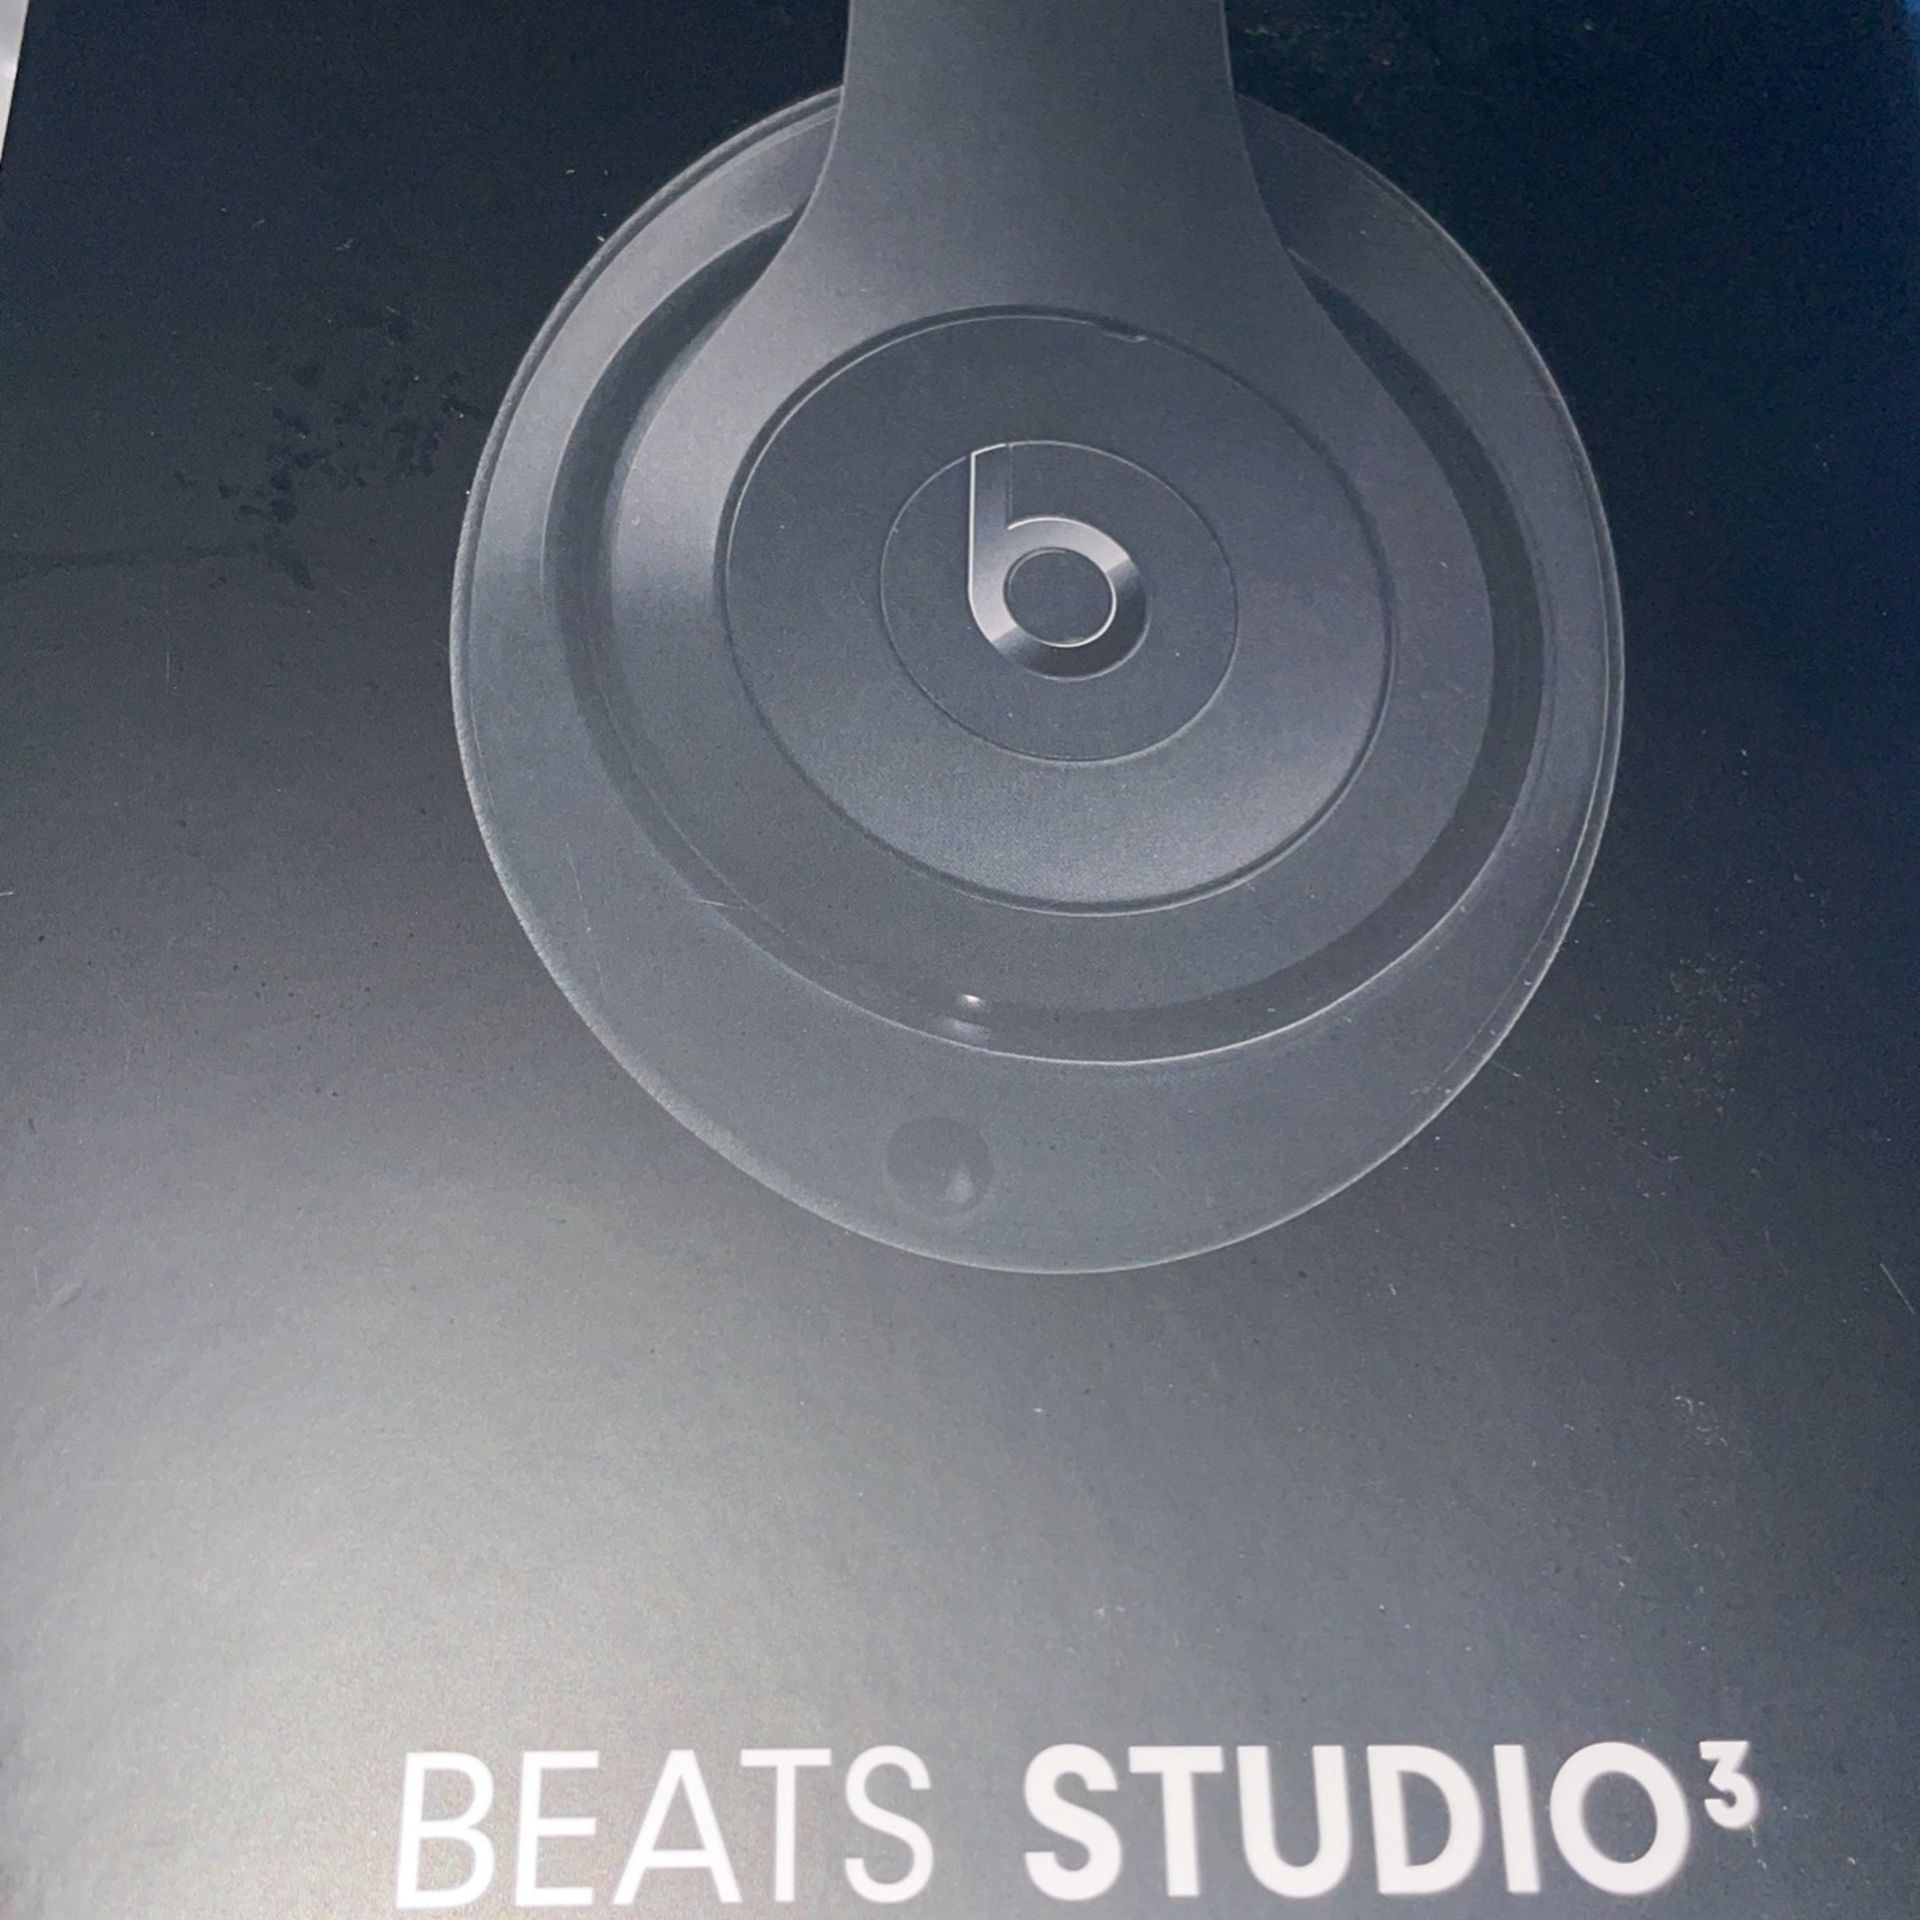 Beats Studios 3 